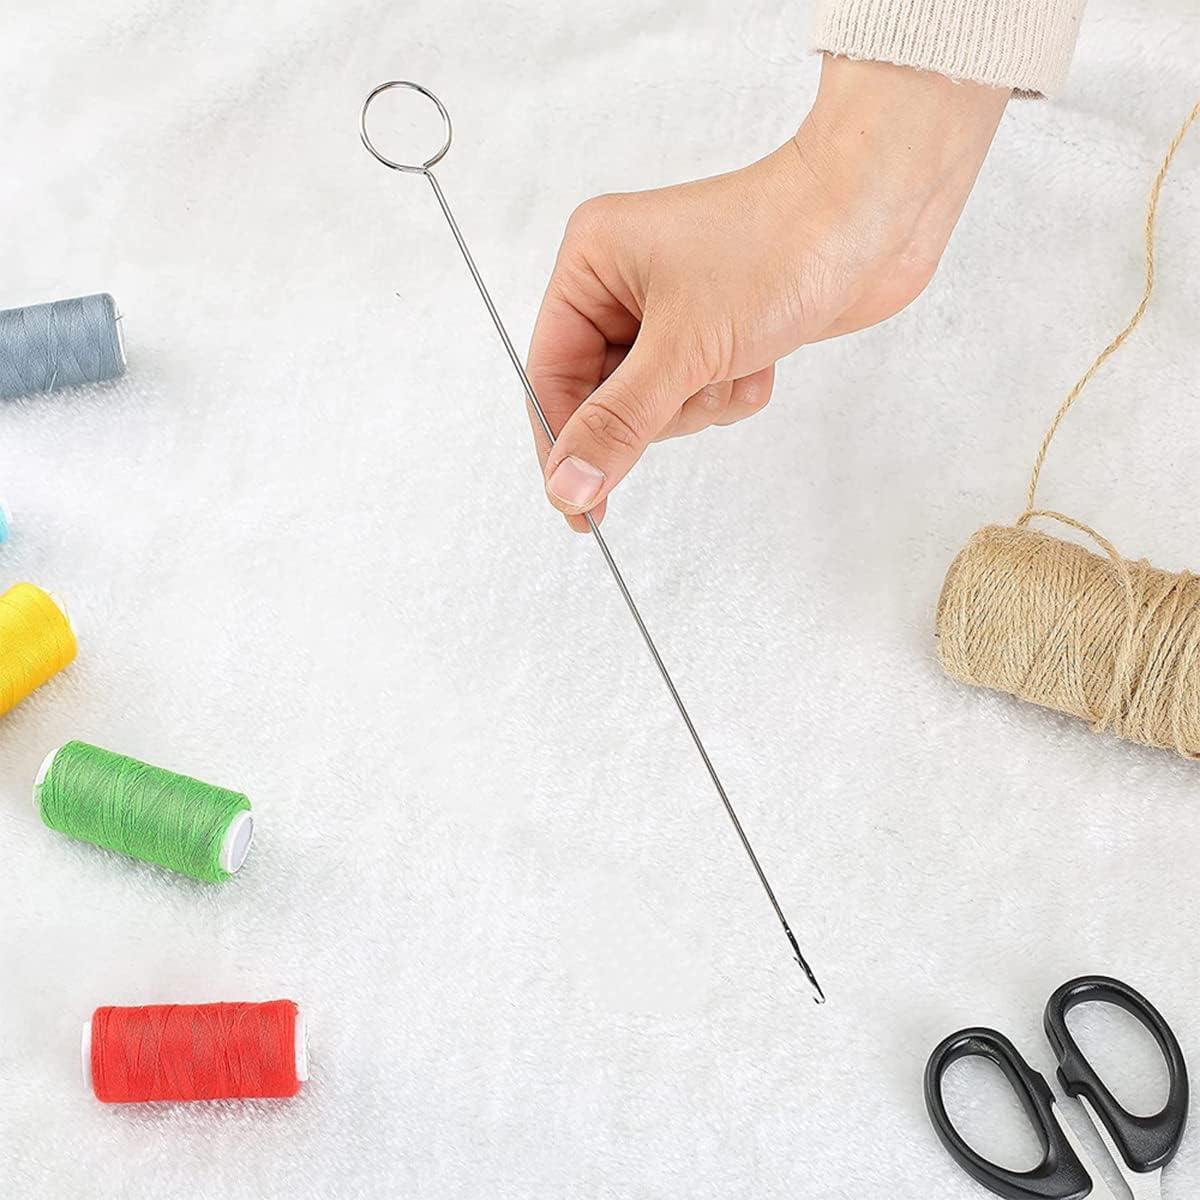 6 Pieces Sewing Loop Kit Include Sewing Loop Turner, Elastic Threaders  Tweezers Long Loop Turner Tool with Latch for Fabric Belts Strips DIY  Knitting